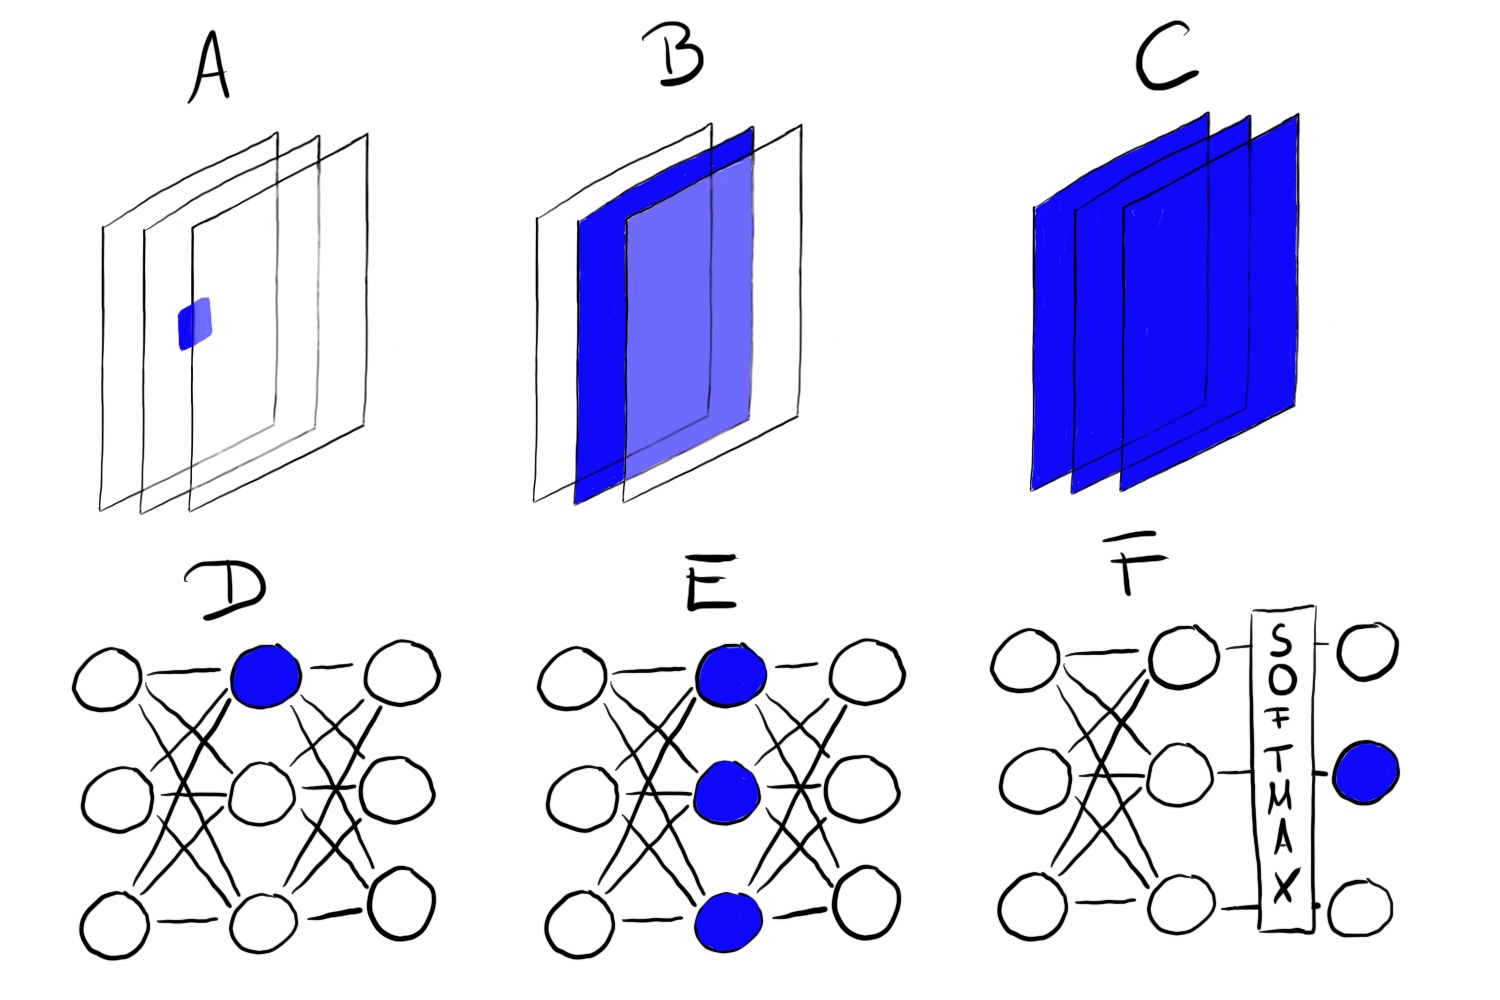 特徴量の可視化は異なるユニットで行うことができる。A)畳み込みニューロン、B)畳み込みチャンネル、C)畳み込み層、D)ニューロン、E)隠れ層、F)クラス確率を示すニューロン(または、それに対応するソフトマックスの前のニューロン)